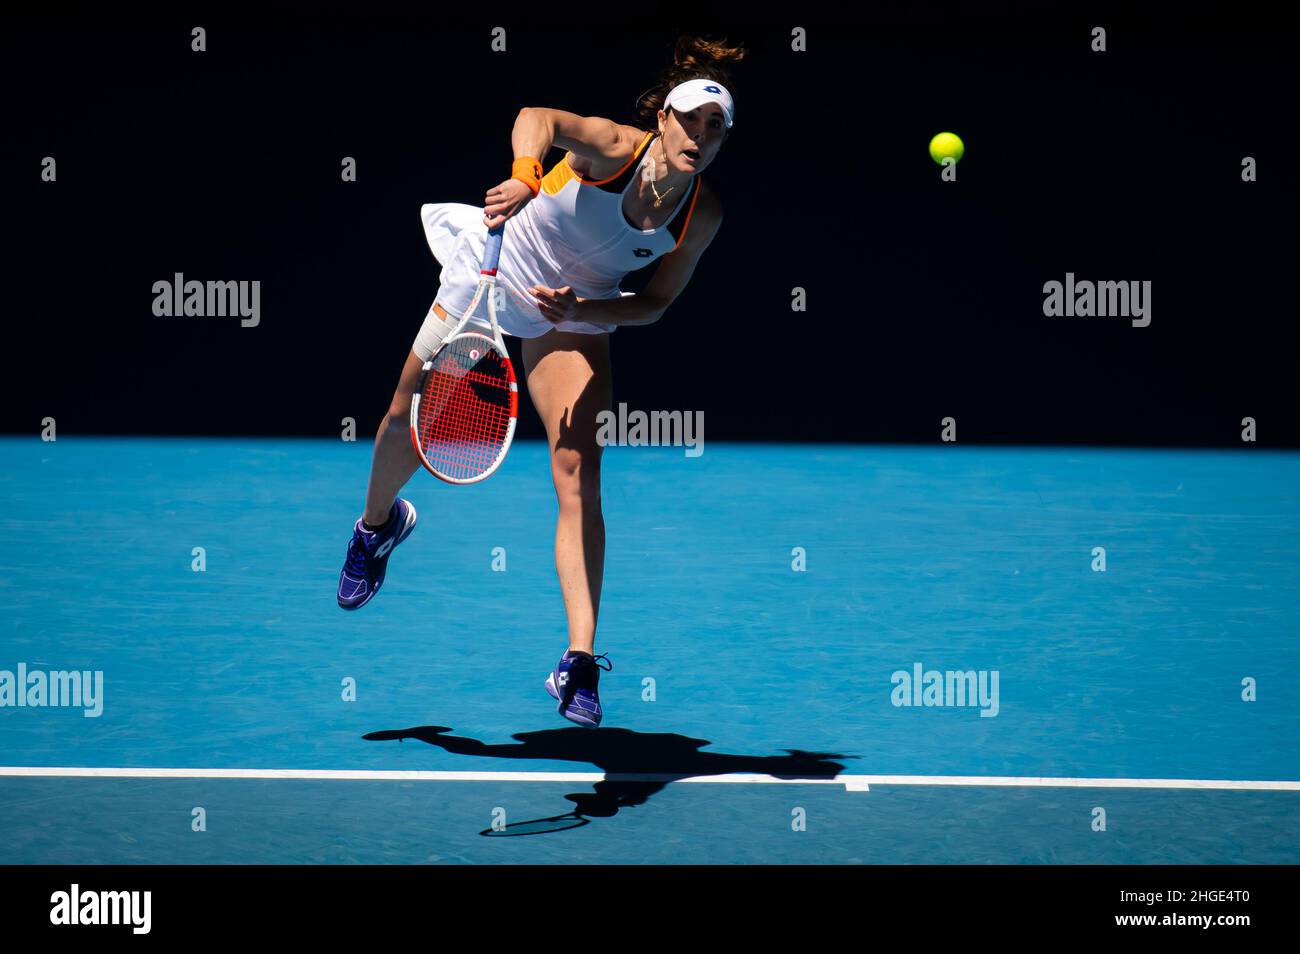 Alize Cornet de France en action contre Garbine Muguruza d'Espagne lors du  deuxième tour de l'Open d'Australie 2022, tournoi de tennis WTA Grand  Chelem le 20 janvier 2022 au Melbourne Park à